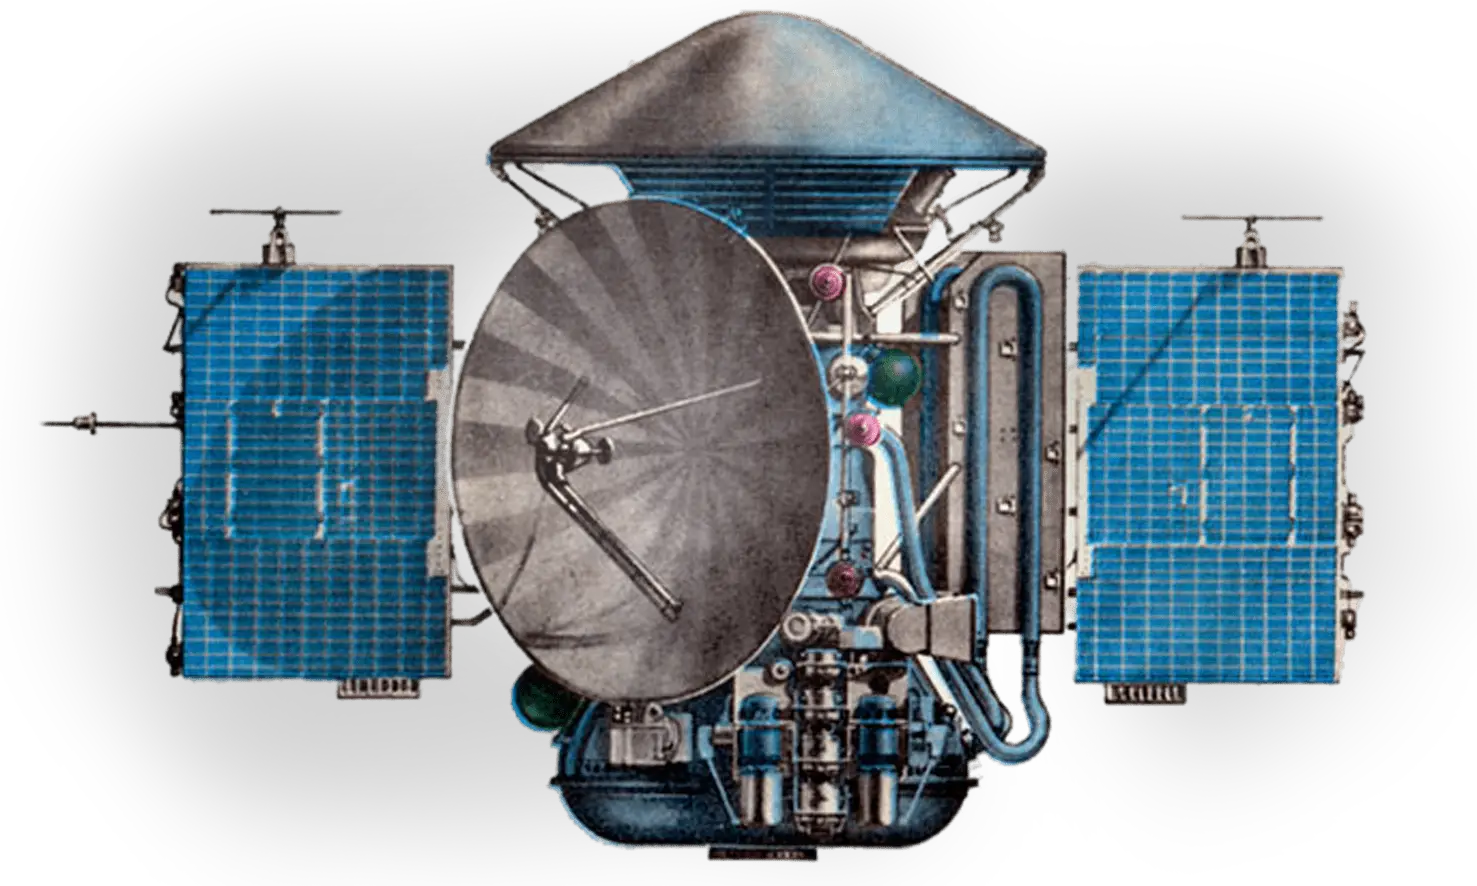 Спускаемый аппарат советской станции. Марс-2 автоматическая межпланетная станция. 27 Ноября 1971 — станция «Марс-2» впервые достигла поверхности Марса.. Спускаемый аппарат автоматической межпланетной станции "Марс-3". Станция Марс 2 впервые достигла поверхности Марса.